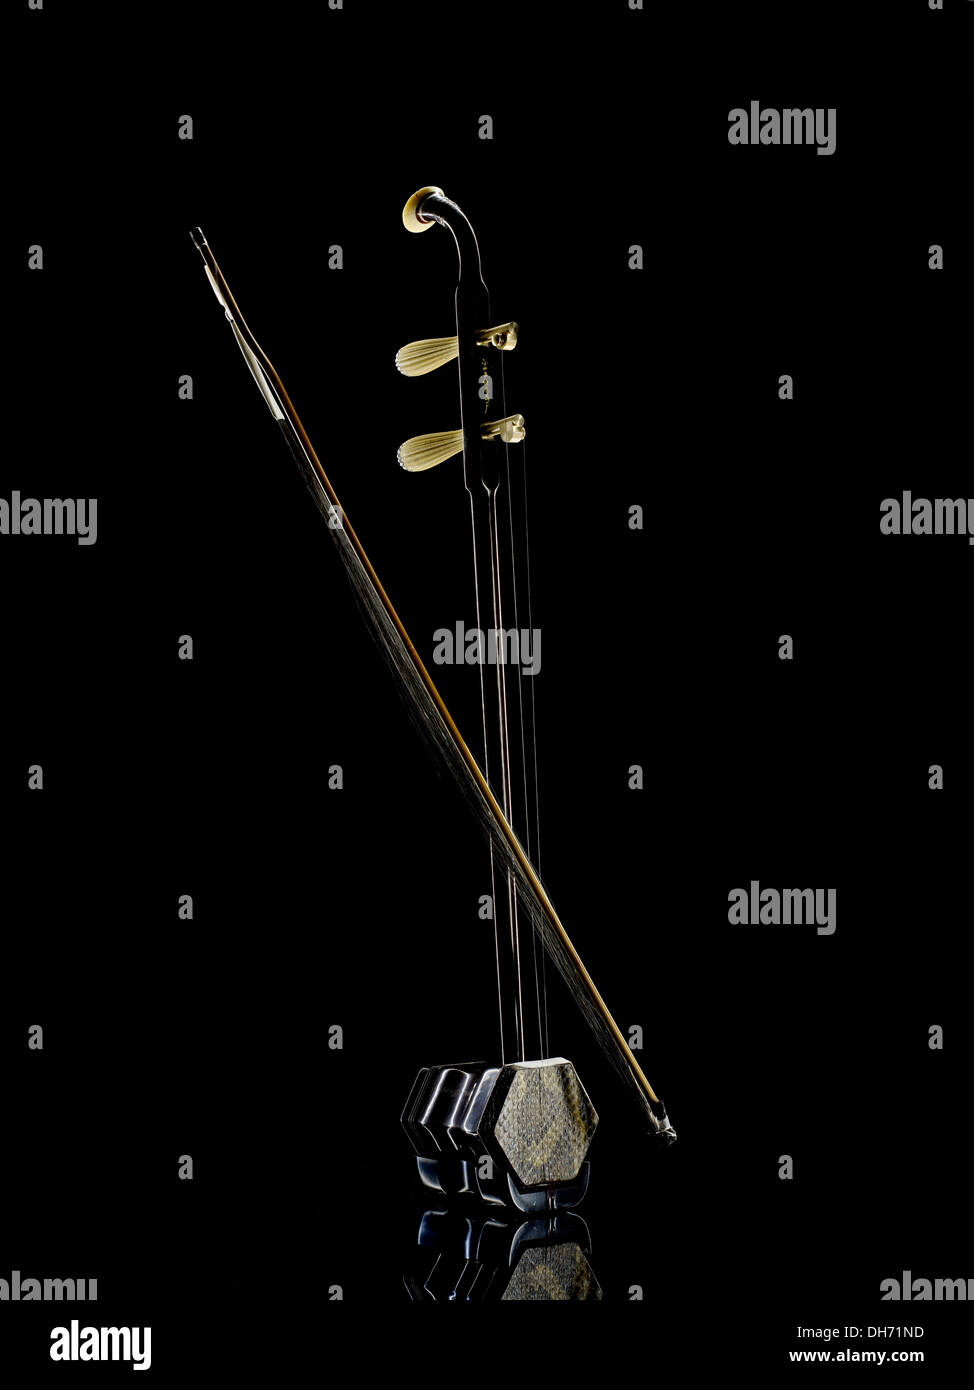 Chinese musical instrument, Erhu Stock Photo